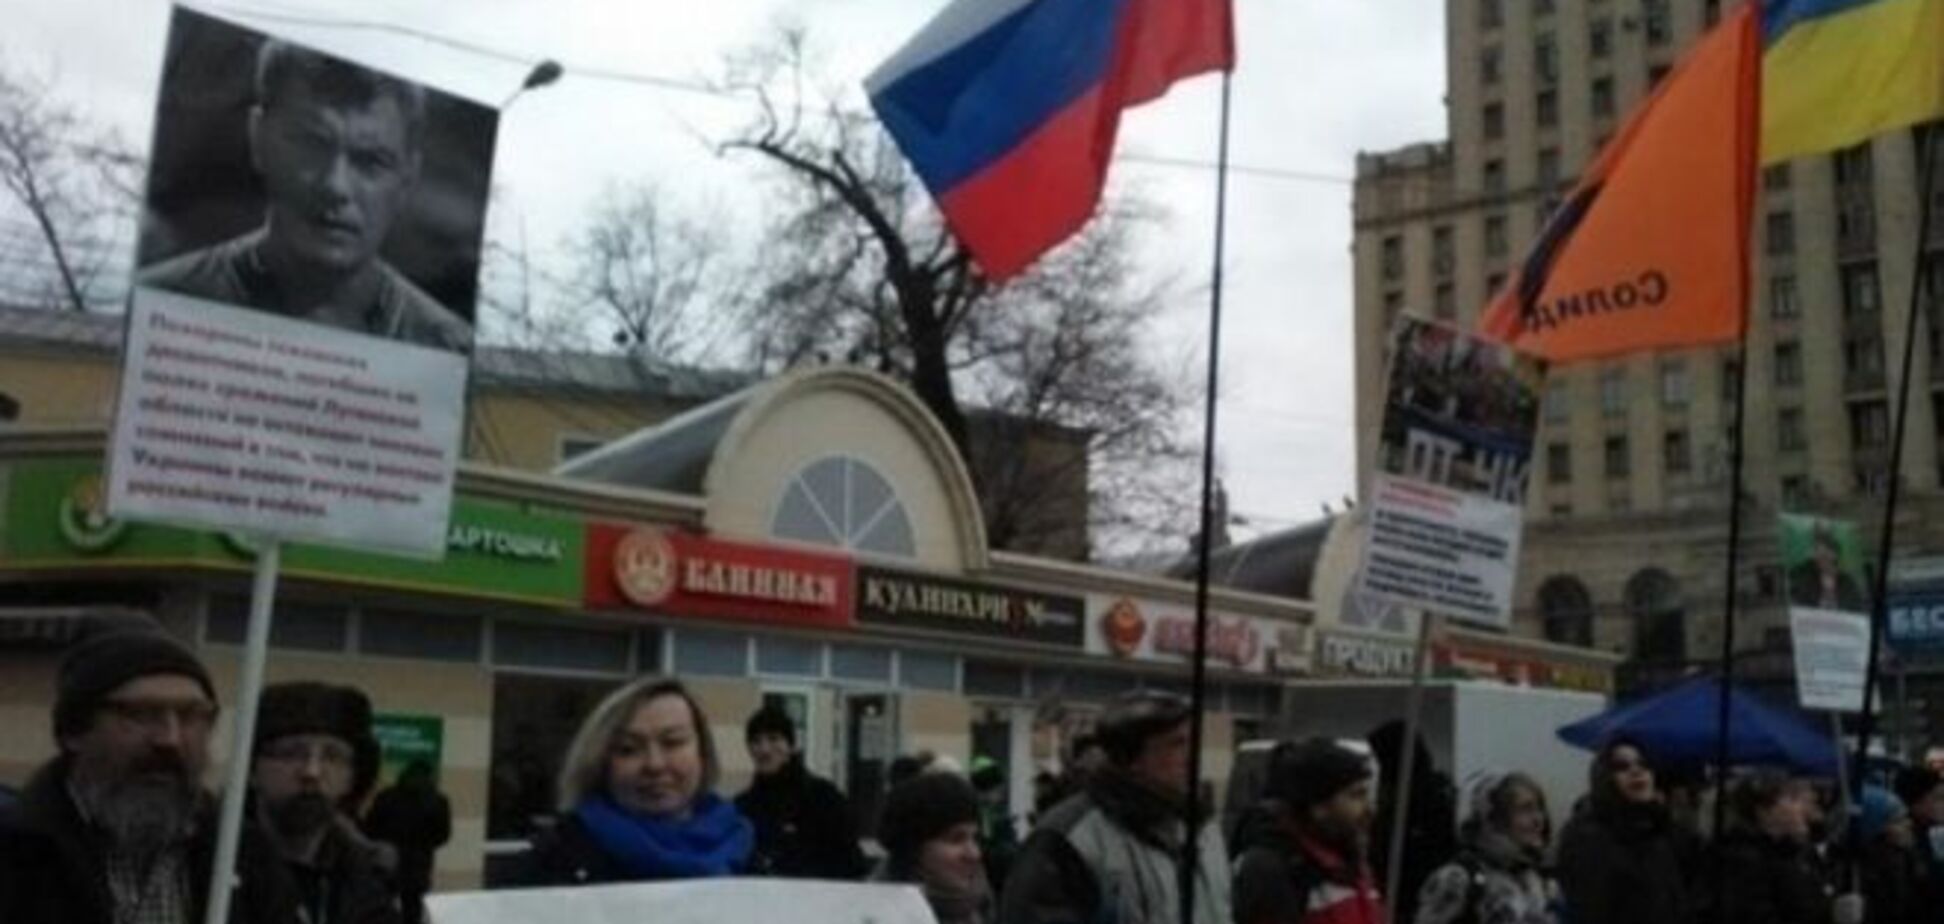 Георгиевские ленты против желто-голубых: в Москве прошла антивоенная акция